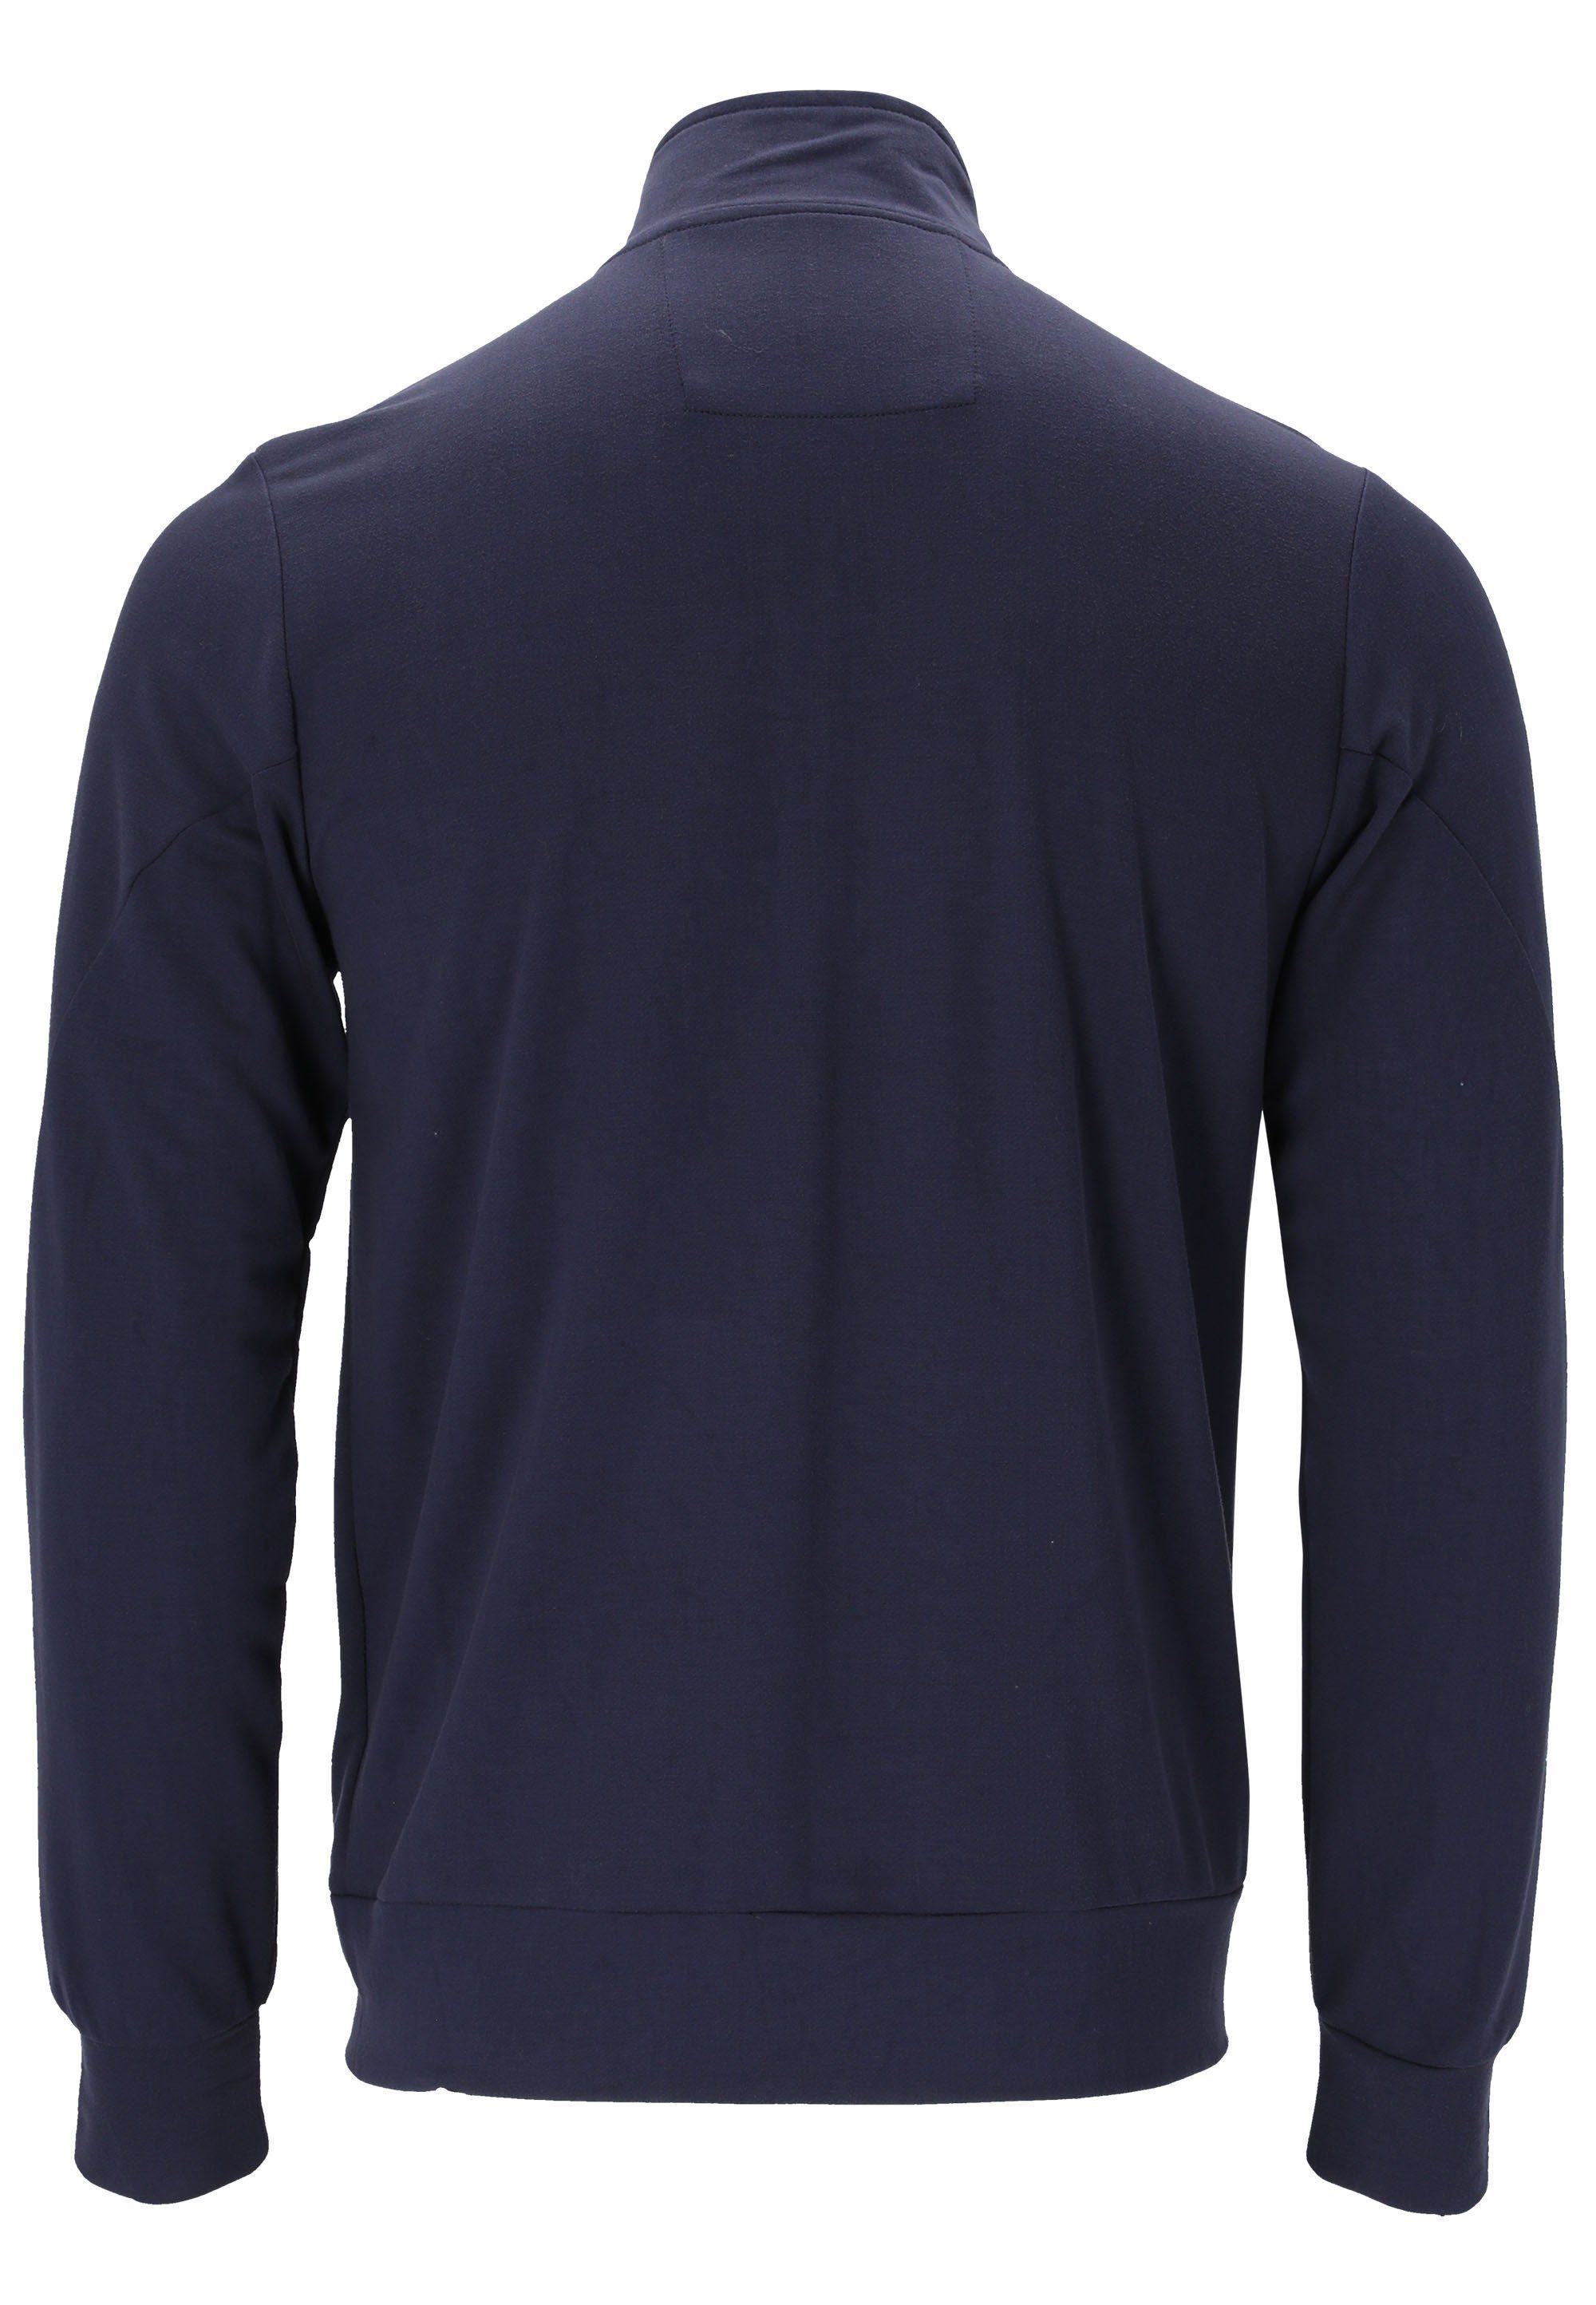 ENDURANCE Sweatshirt Loweer dunkelblau Seitentaschen mit praktischen